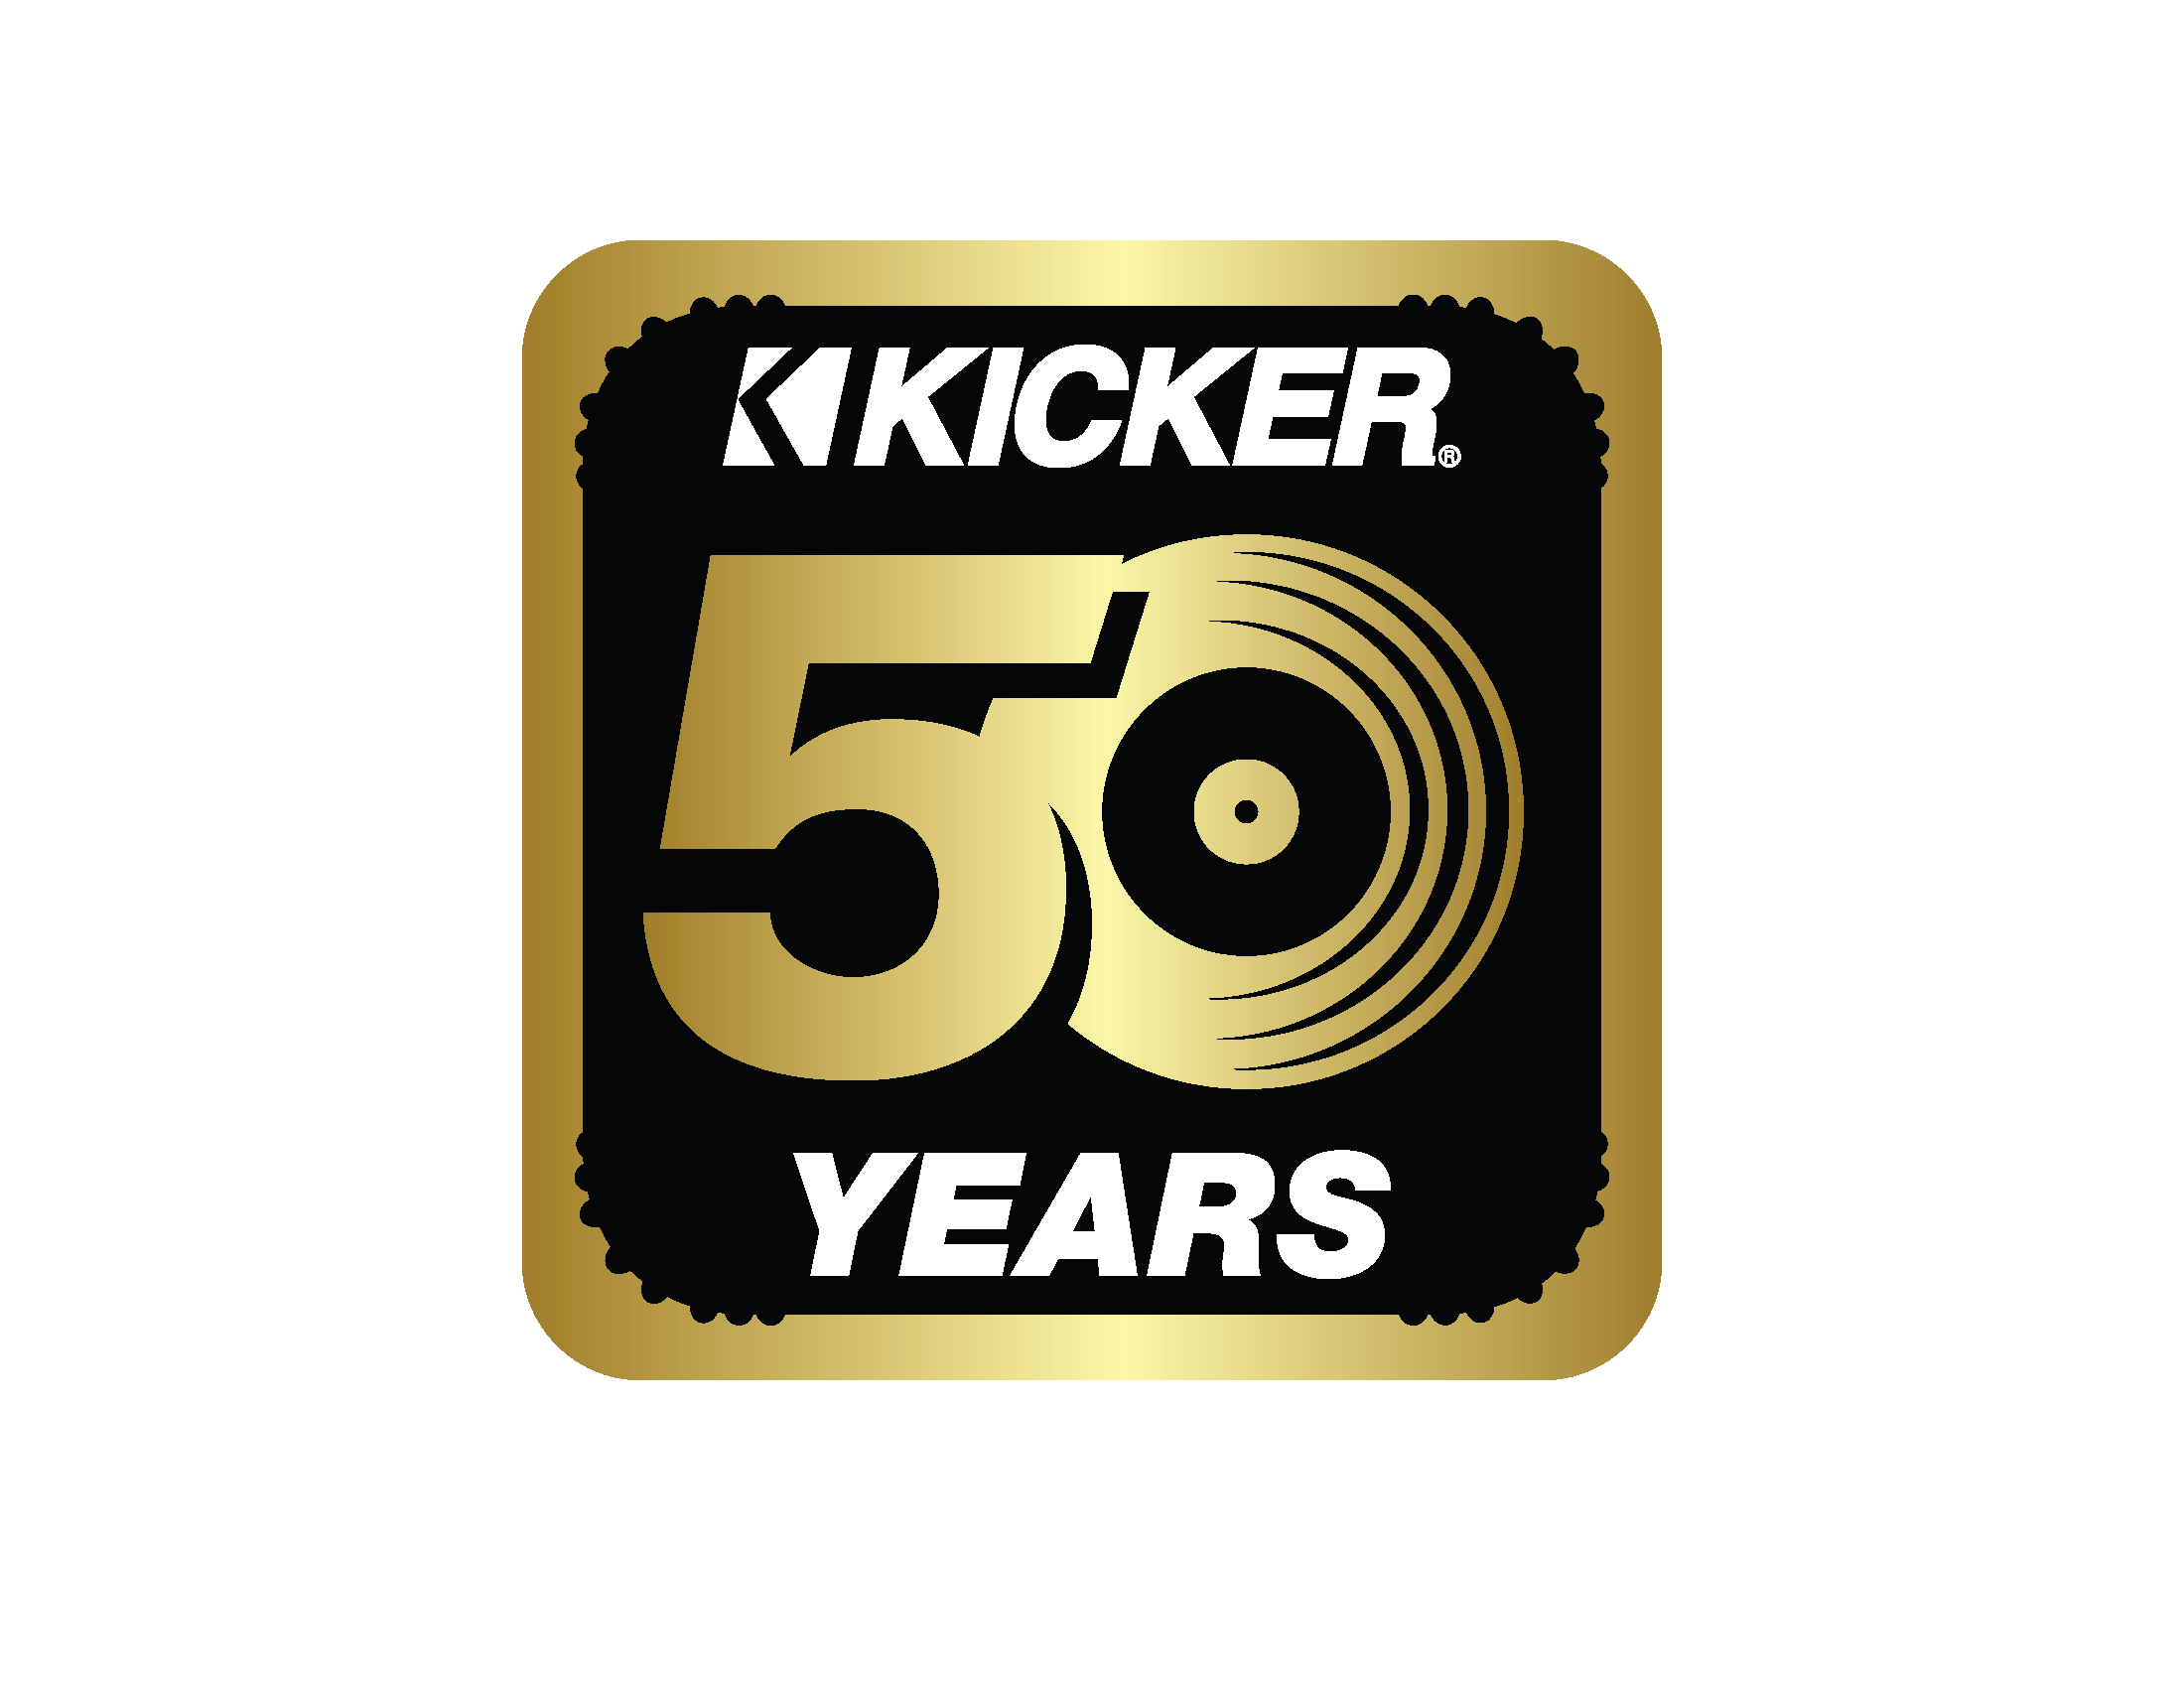 KICKER Marine Audio joins ELEVATE SUMMIT 2023 as Leadership Alliance Sponsor